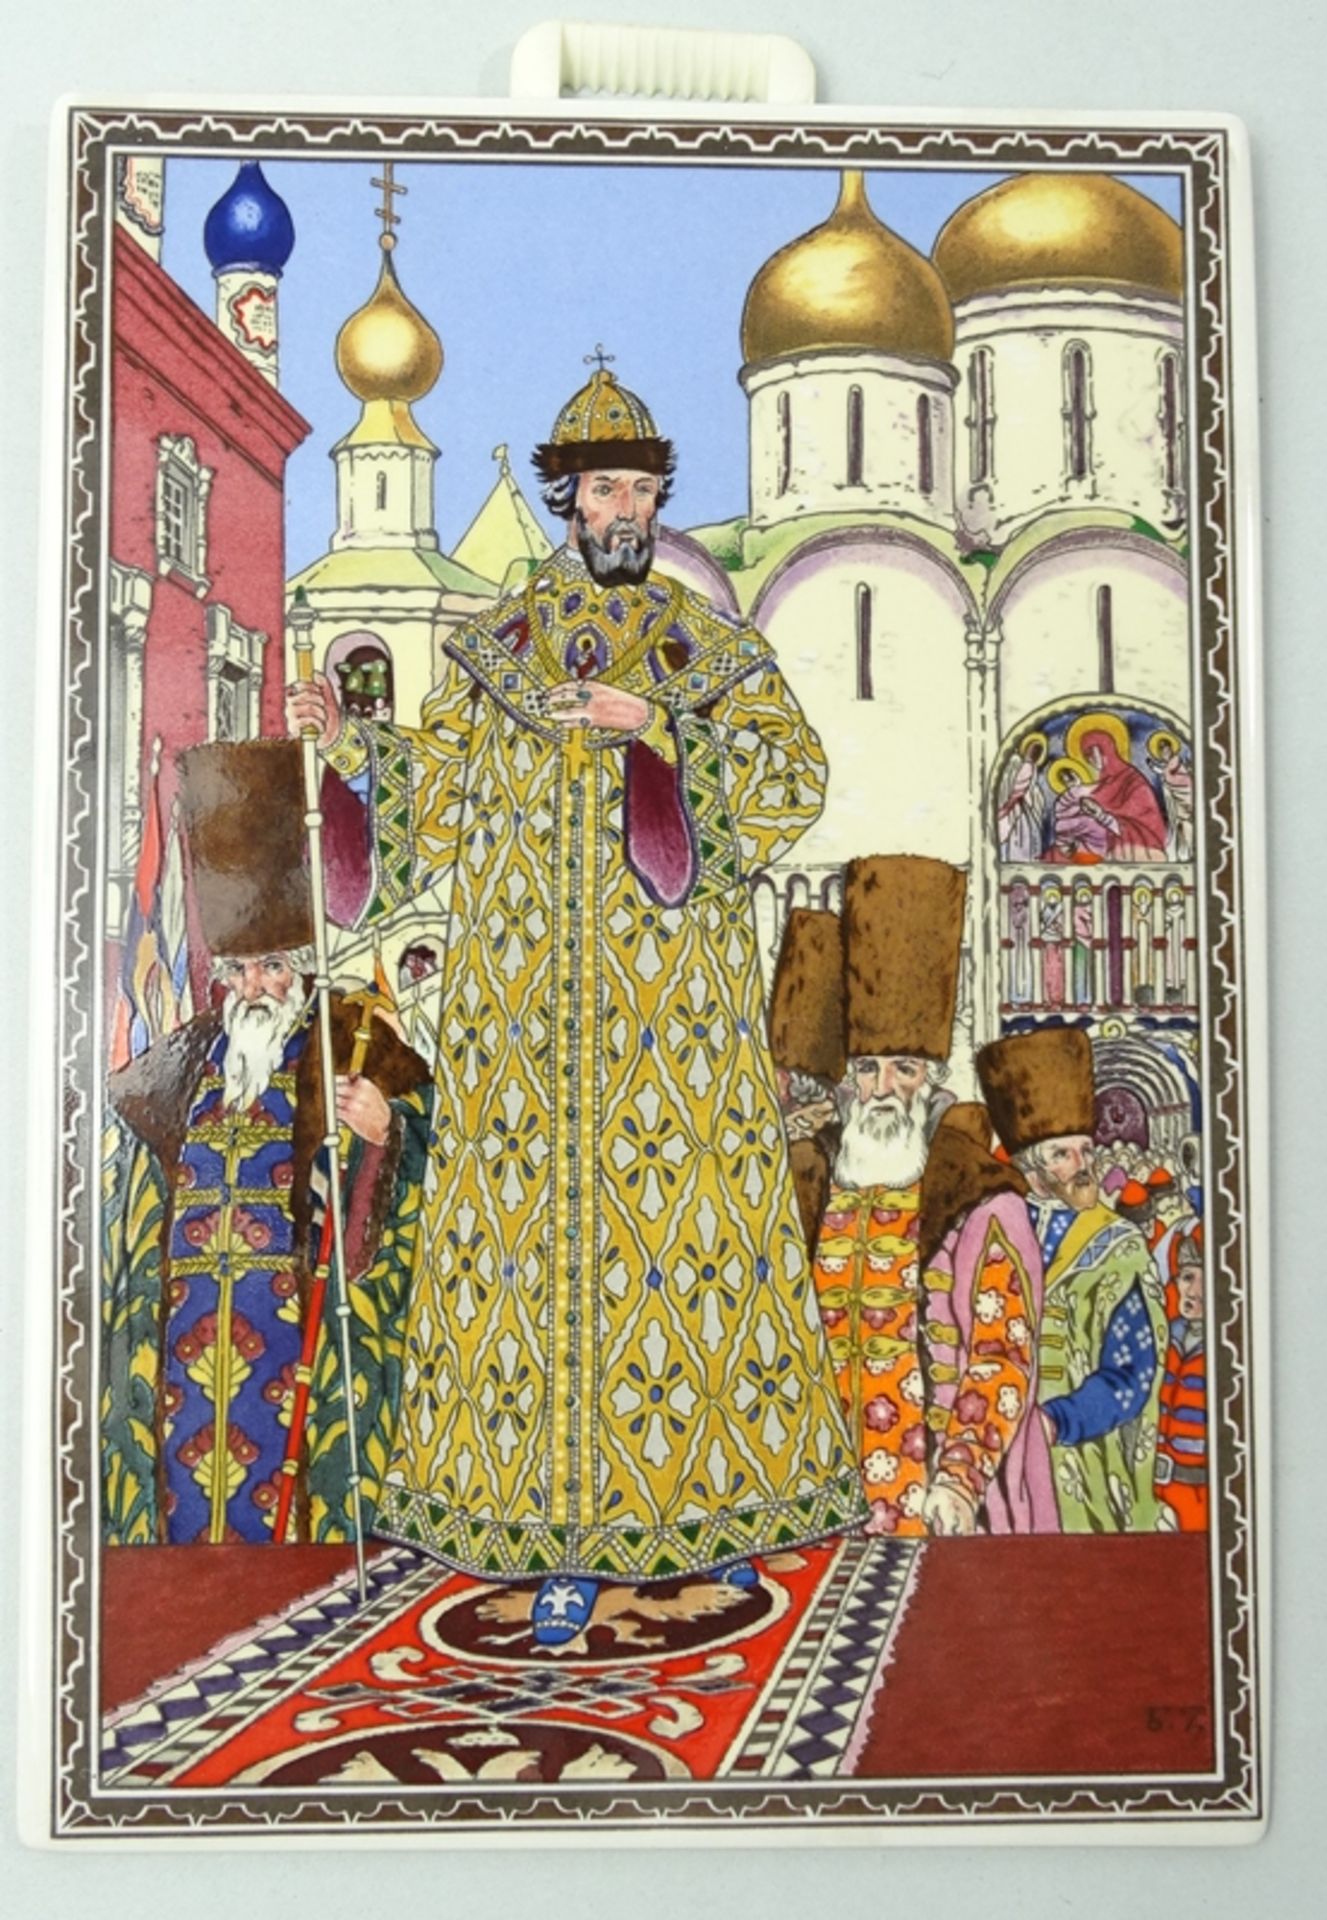 4 Porzellanbilder von Villeroy & Boch, Motive von Boris Zvorykin, je 17,5 x 12,5 cm - Image 6 of 10